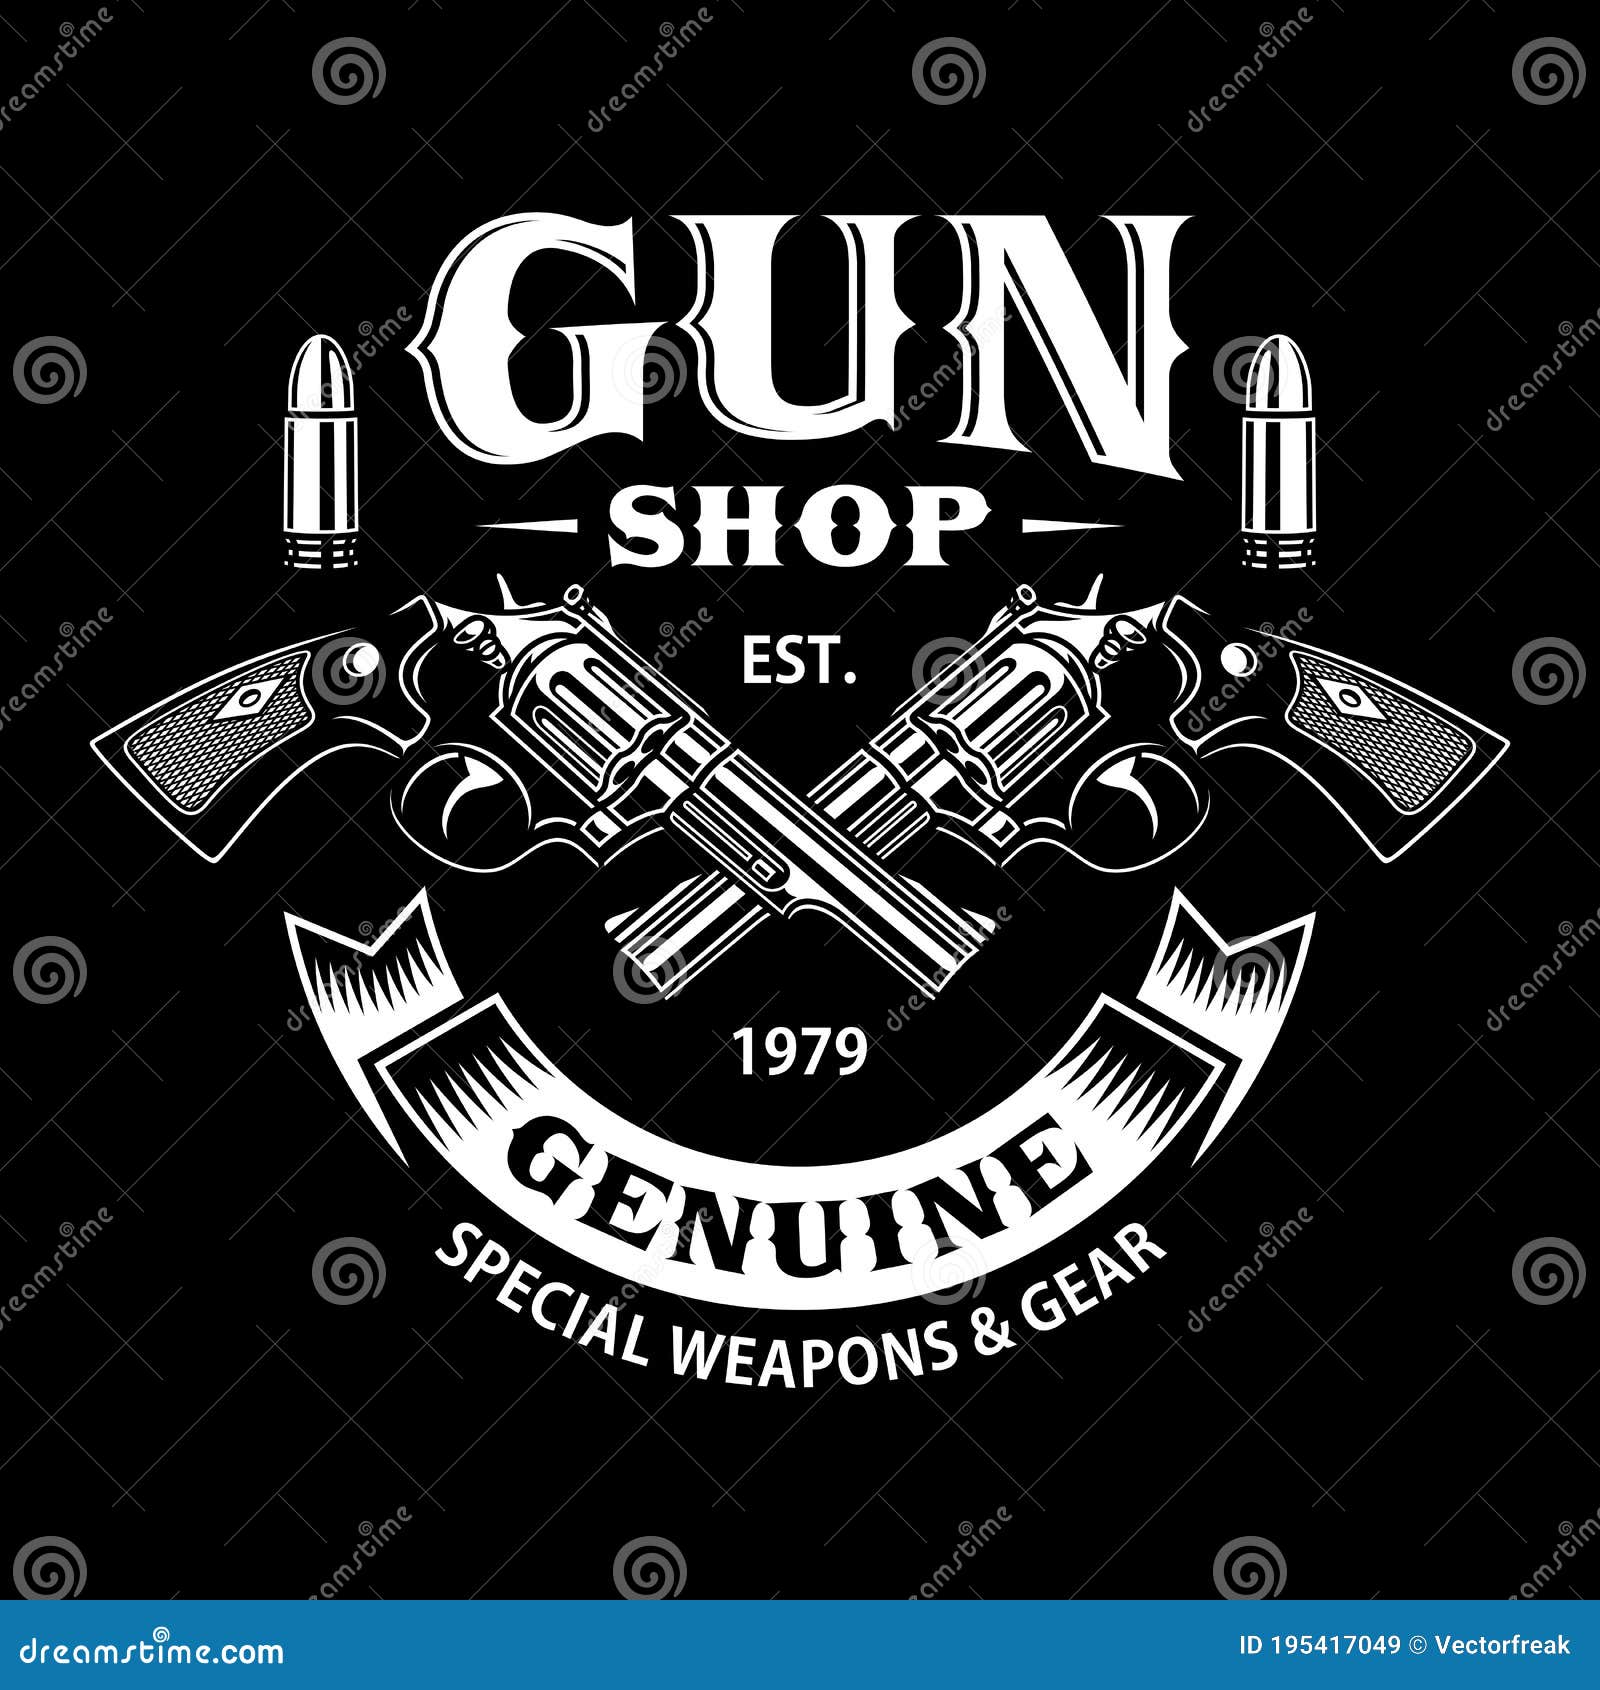 35 Gun Shop Logo - Pin Logo Icon